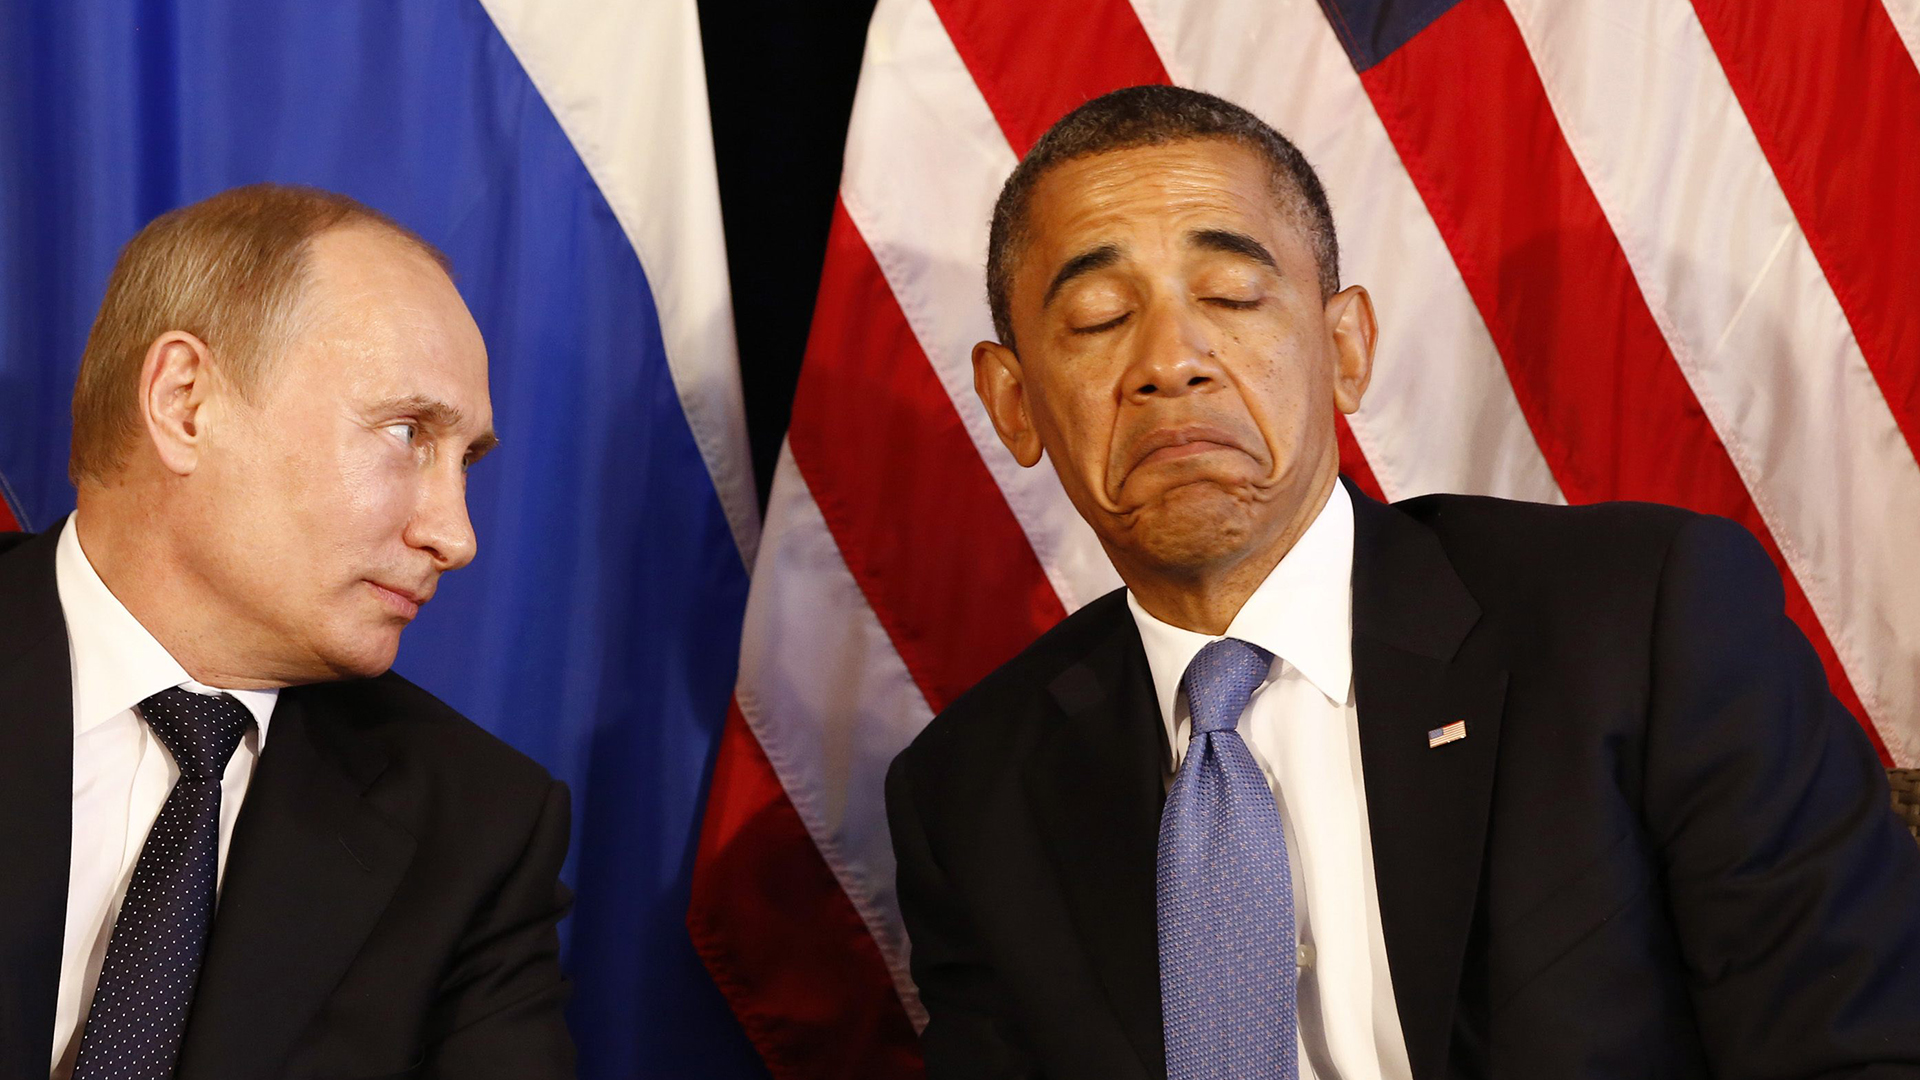 Что будут обсуждать Путин и Обама? - мнение экспертов